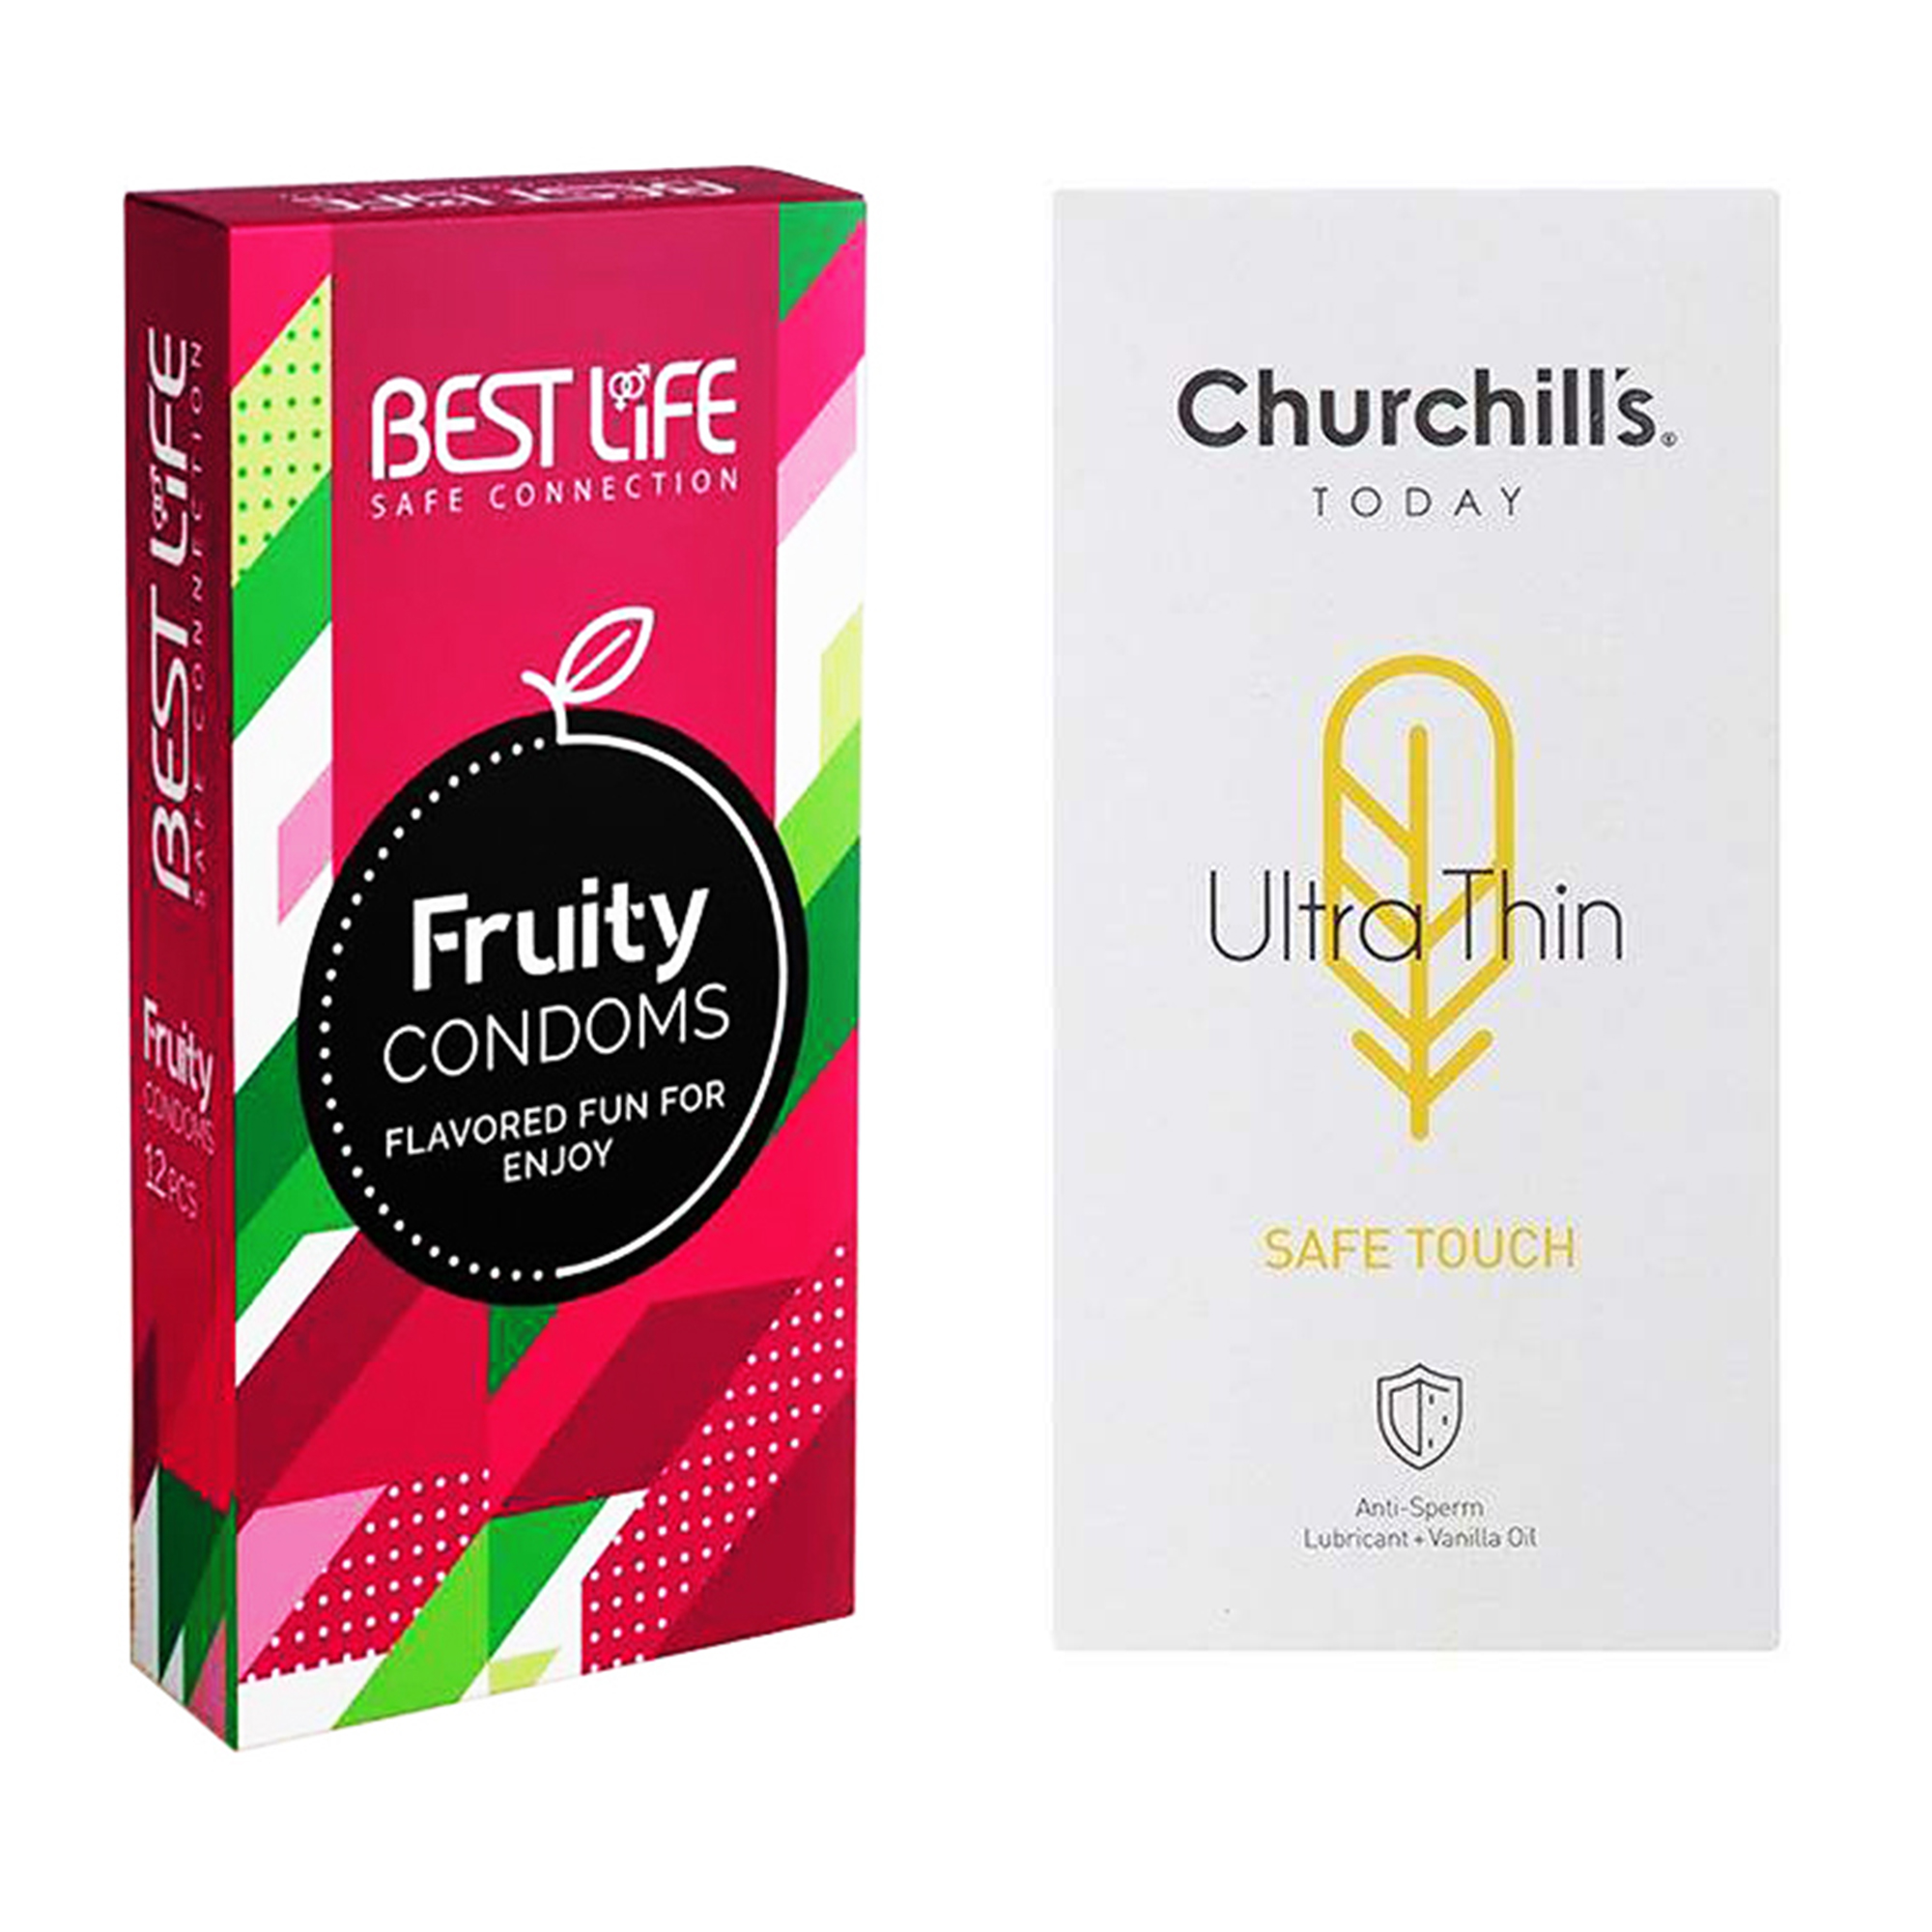 کاندوم چرچیلز مدل Safe Touch بسته 12 عددی به همراه کاندوم بست لایف مدل Fruity بسته 12 عددی